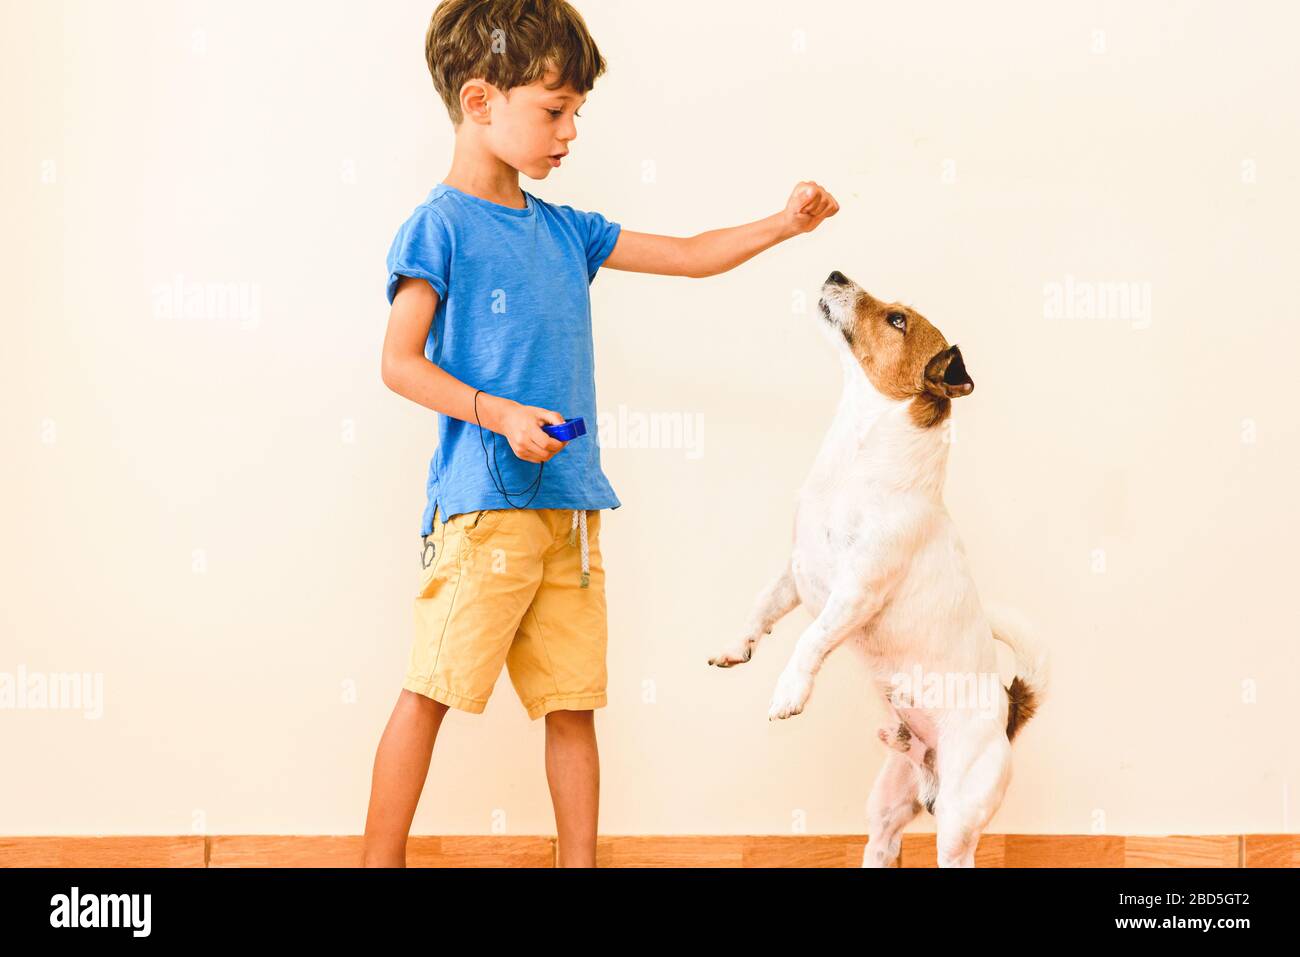 Restez à la maison apprendre nouveau concept de compétence avec des tours de chien d'entraînement de garçon avec clicker et renforcement positif Banque D'Images